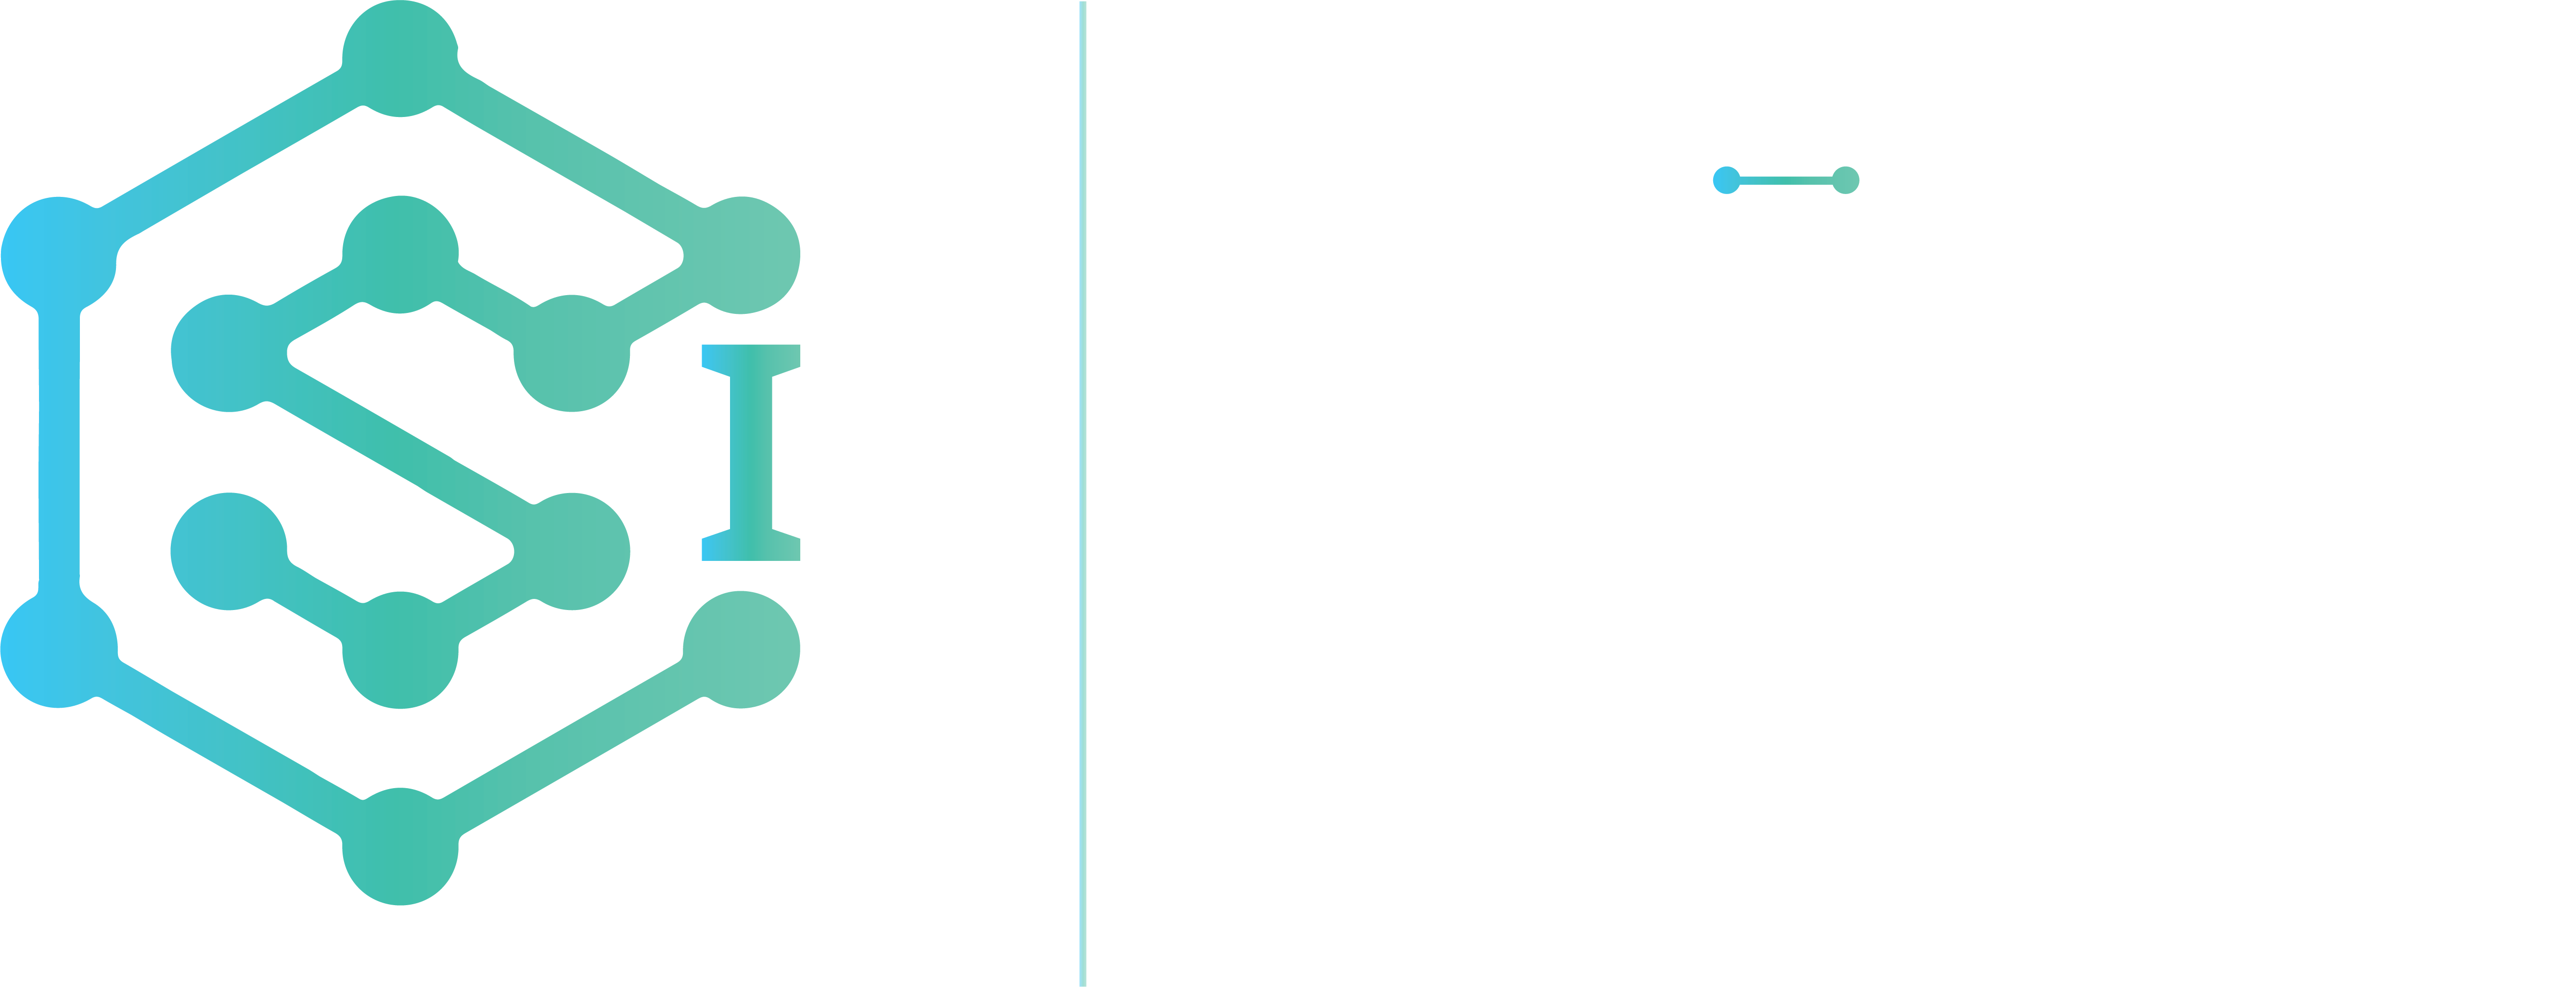 CSure Infotech